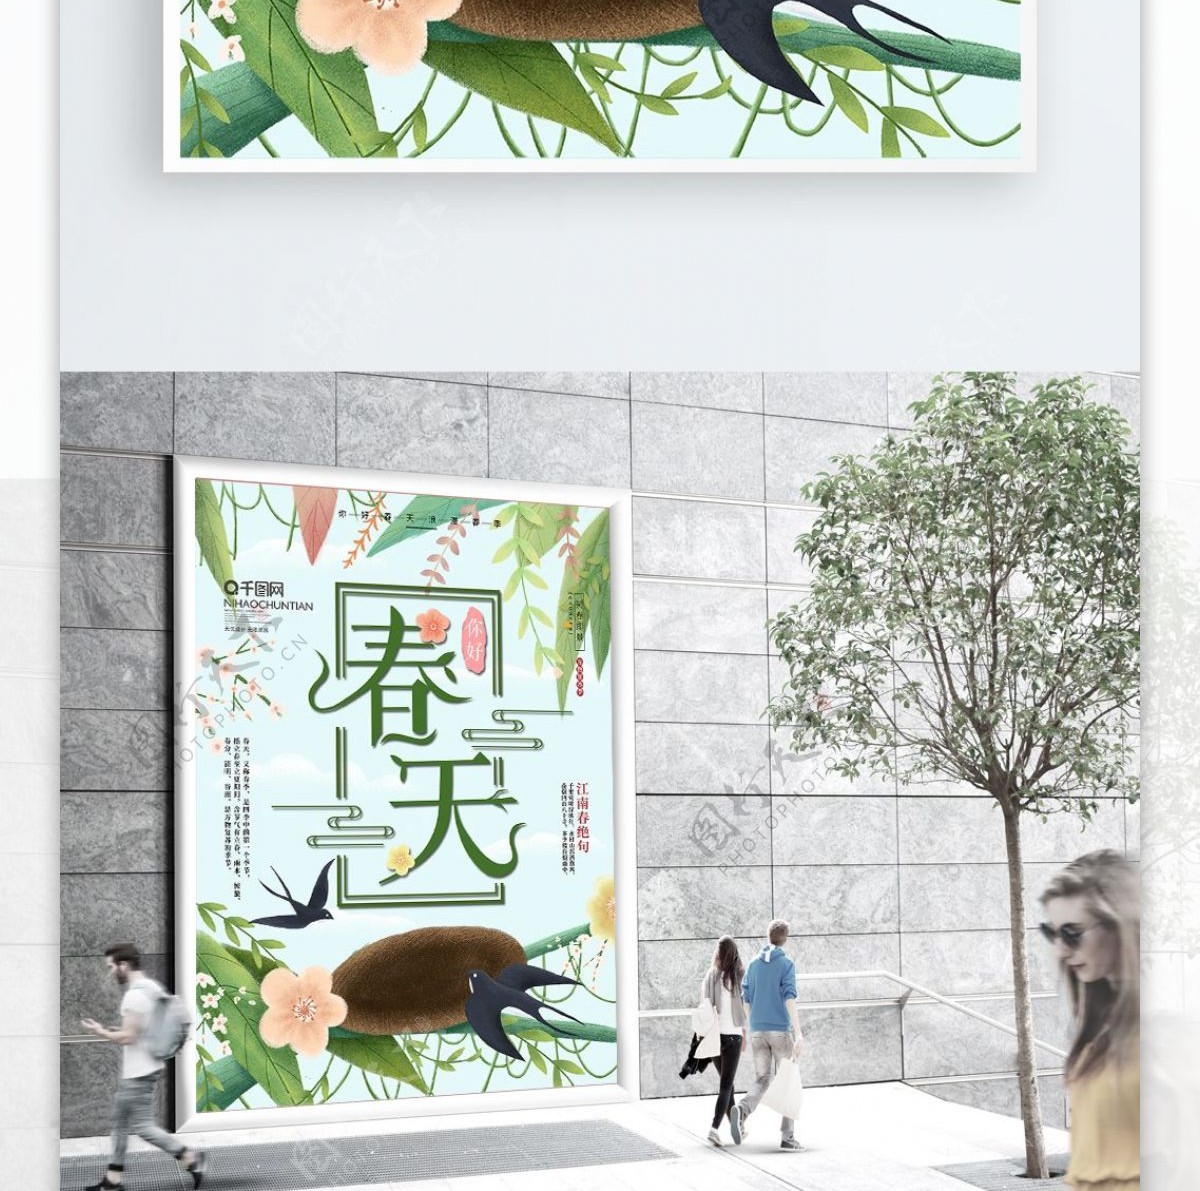 原创手绘小清新燕子树林春天宣传海报